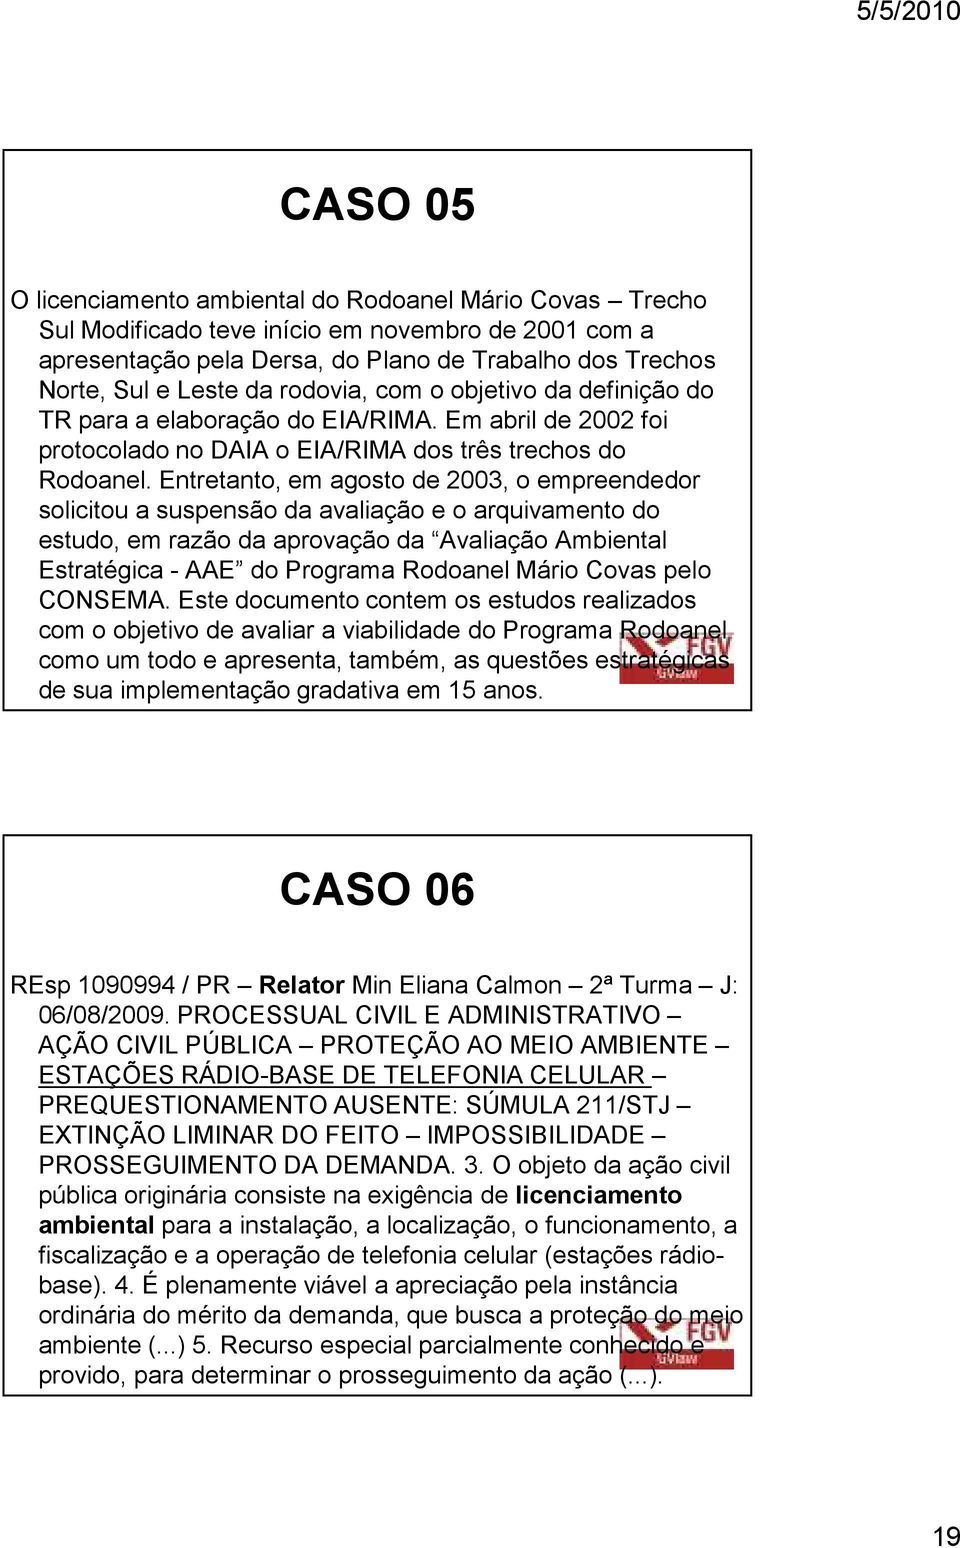 Entretanto, em agosto de 2003, o empreendedor solicitou a suspensão da avaliação e o arquivamento do estudo, em razão da aprovação da Avaliação Ambiental Estratégica - AAE do Programa Rodoanel Mário